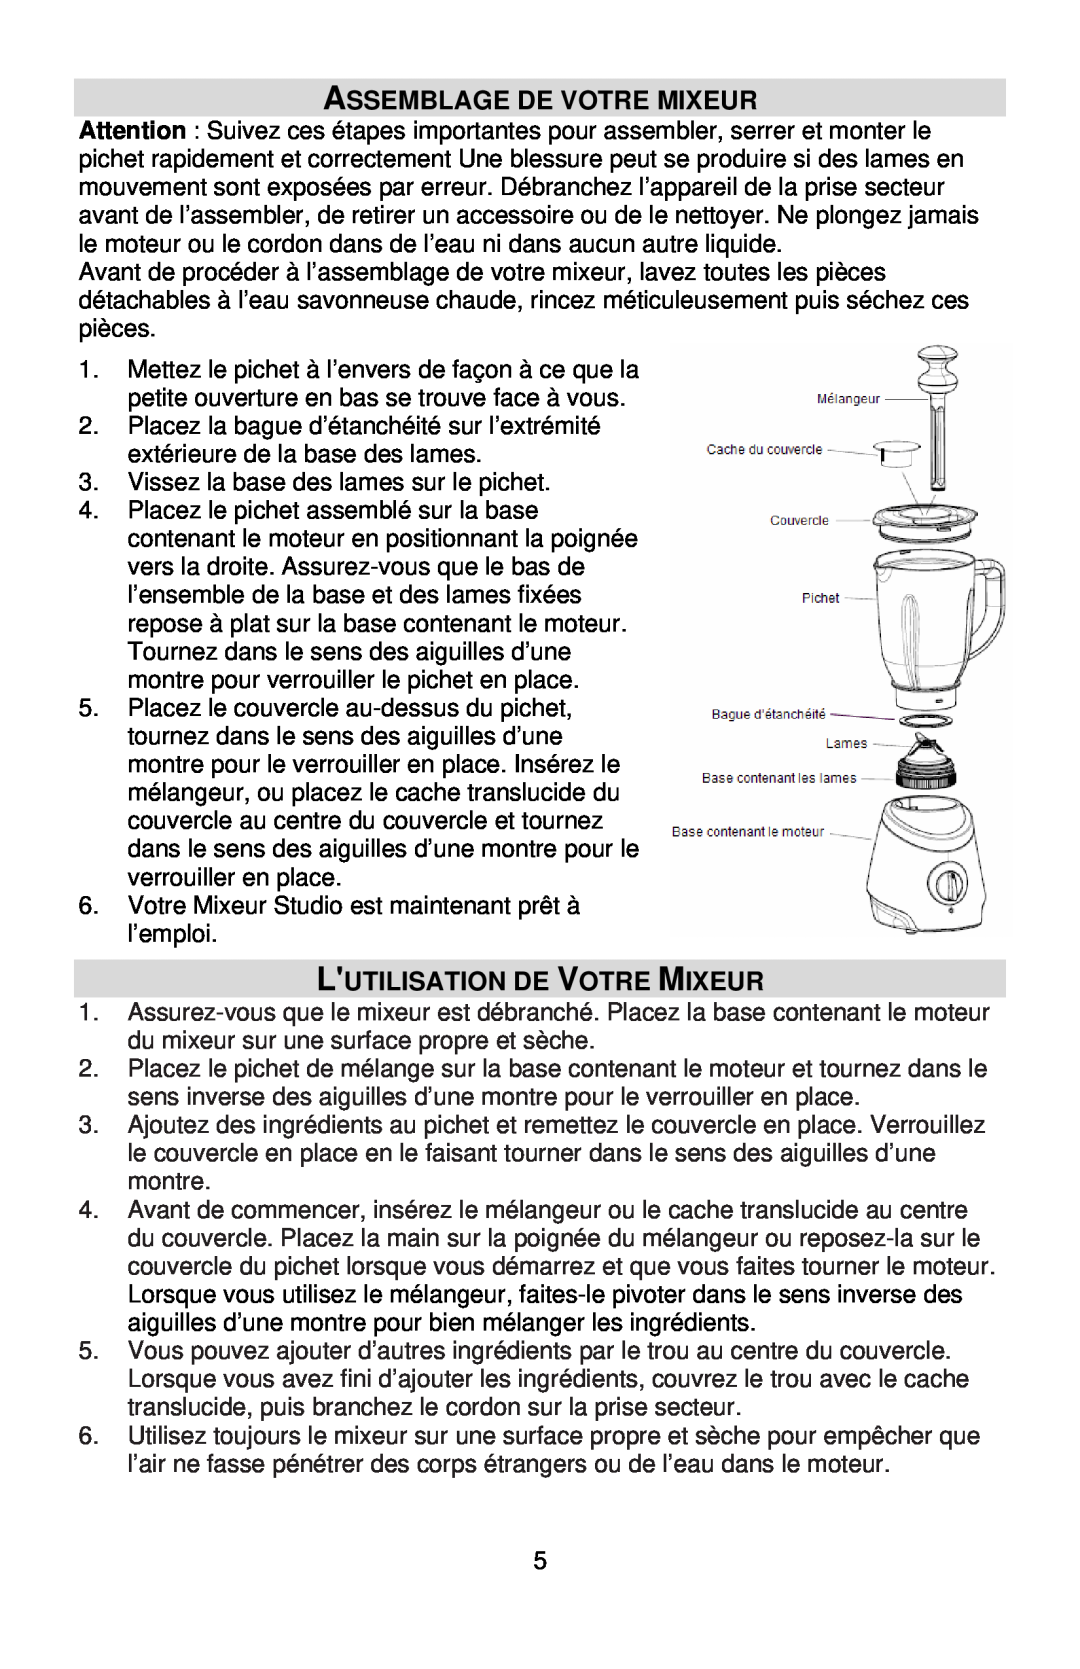 West Bend L5700 instruction manual Assemblage De Votre Mixeur, Lutilisation De Votre Mixeur 